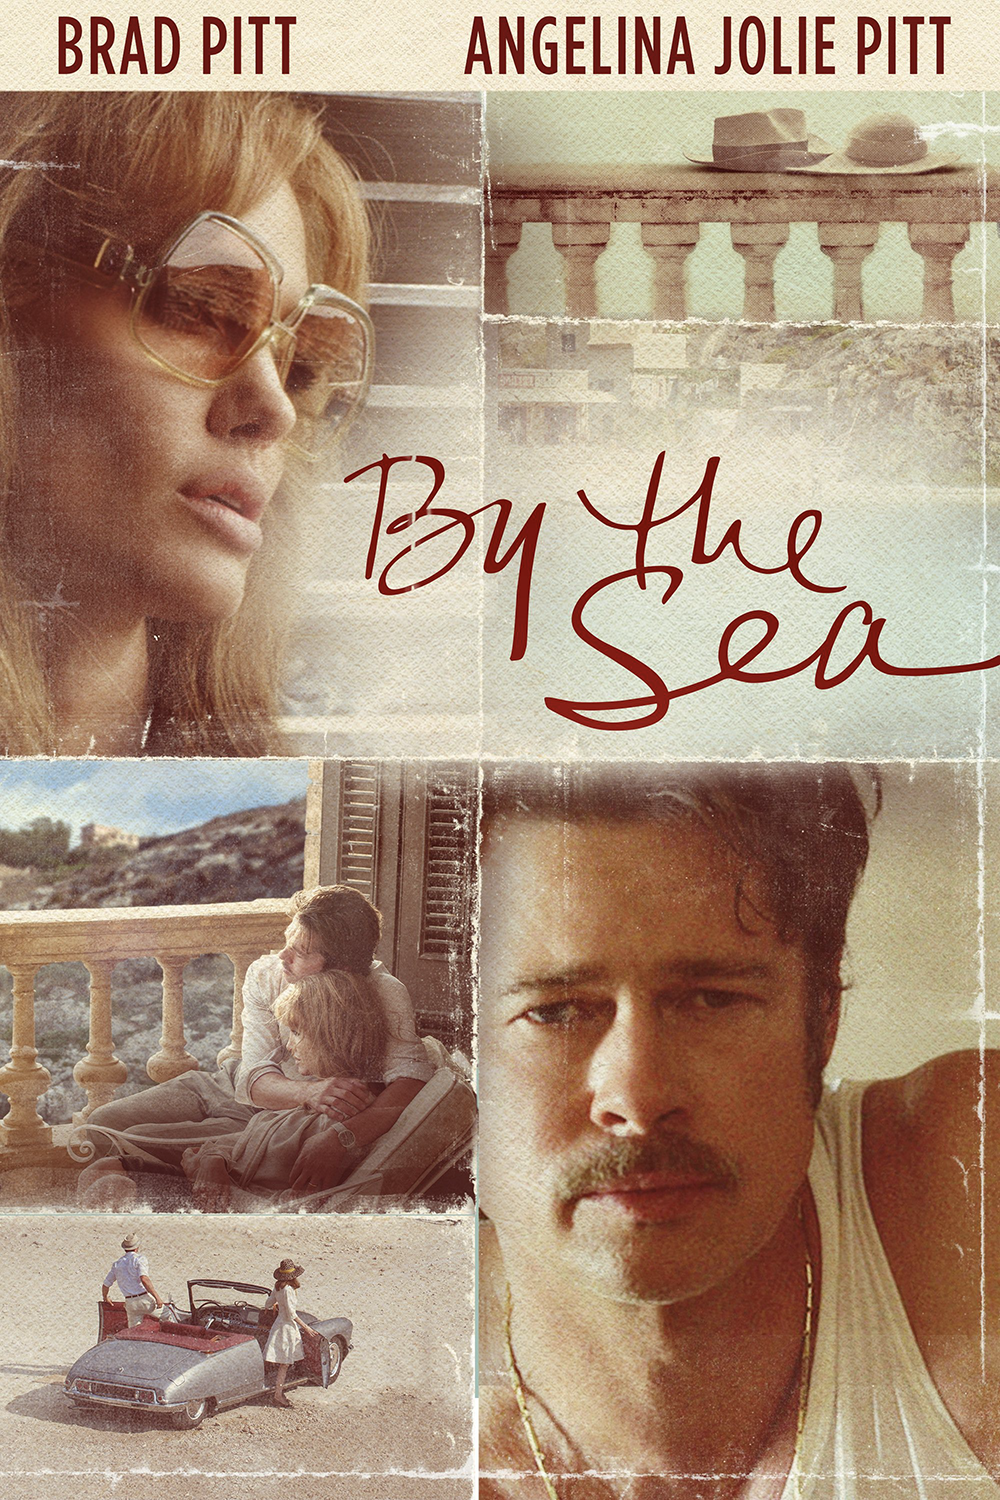 Filmplakat von 'By the Sea' mit Angelina Jolie und Brad Pitt, das das romantische und dramatische Handlungsthema des Films einfängt.